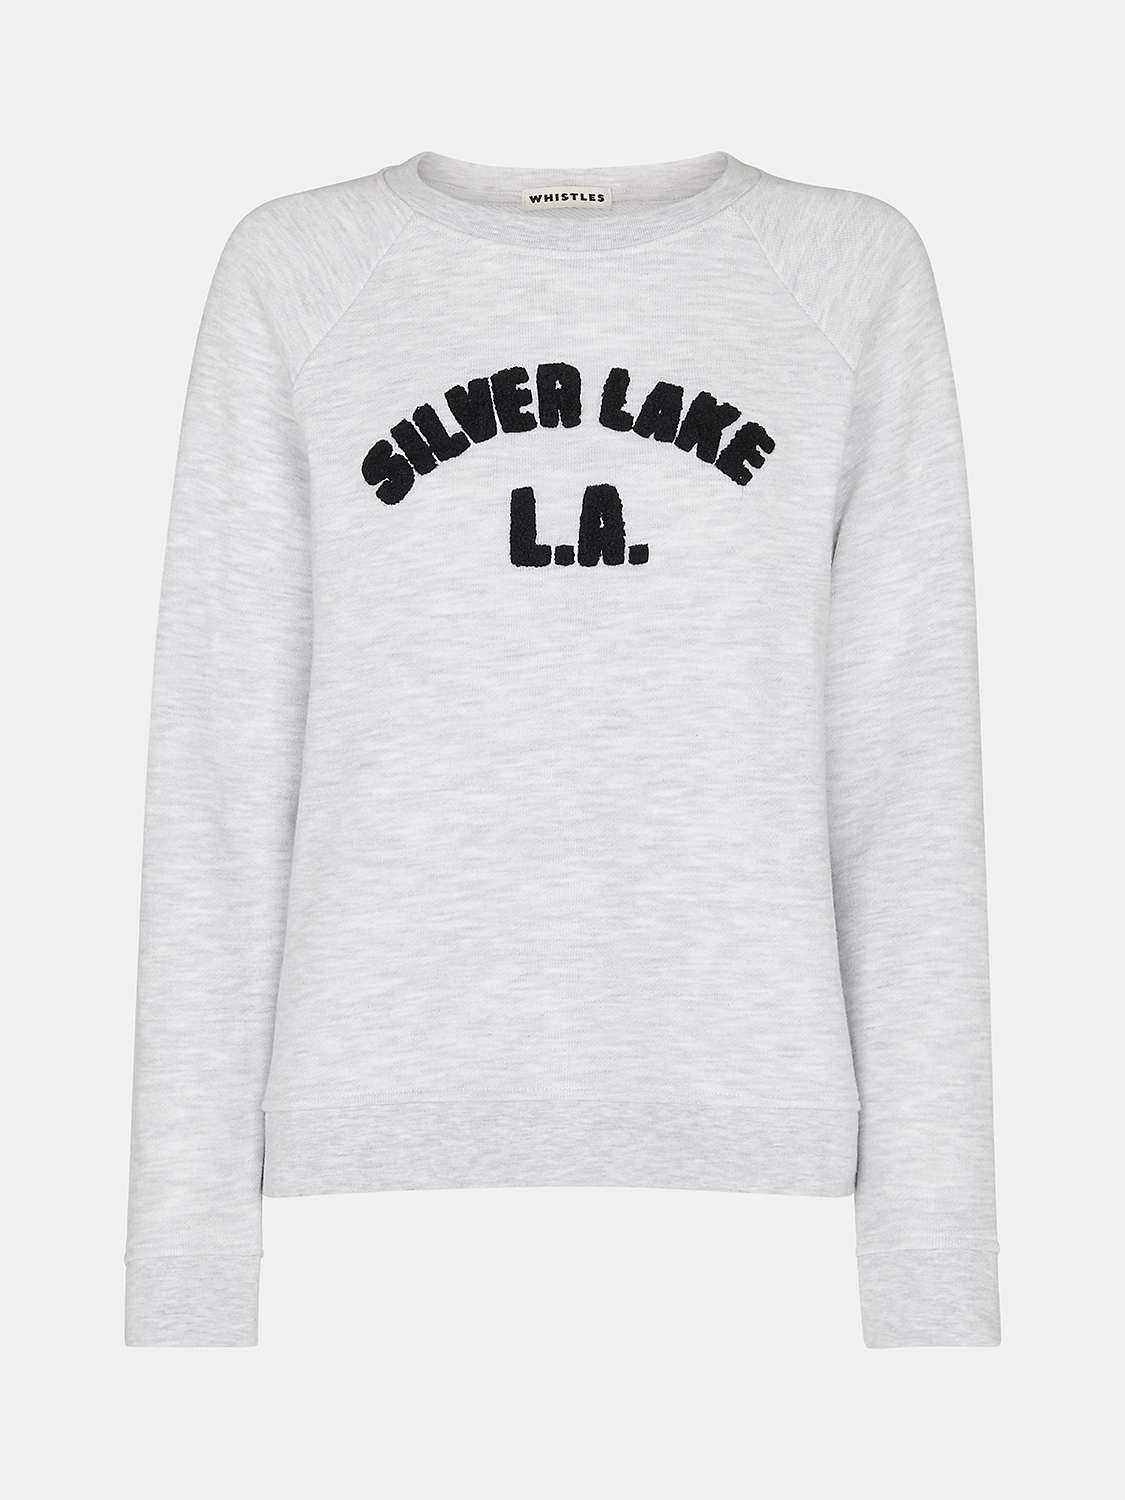 Buy Whistles Cotton Blend Silverlake Logo Sweatshirt, Grey Marl Online at johnlewis.com